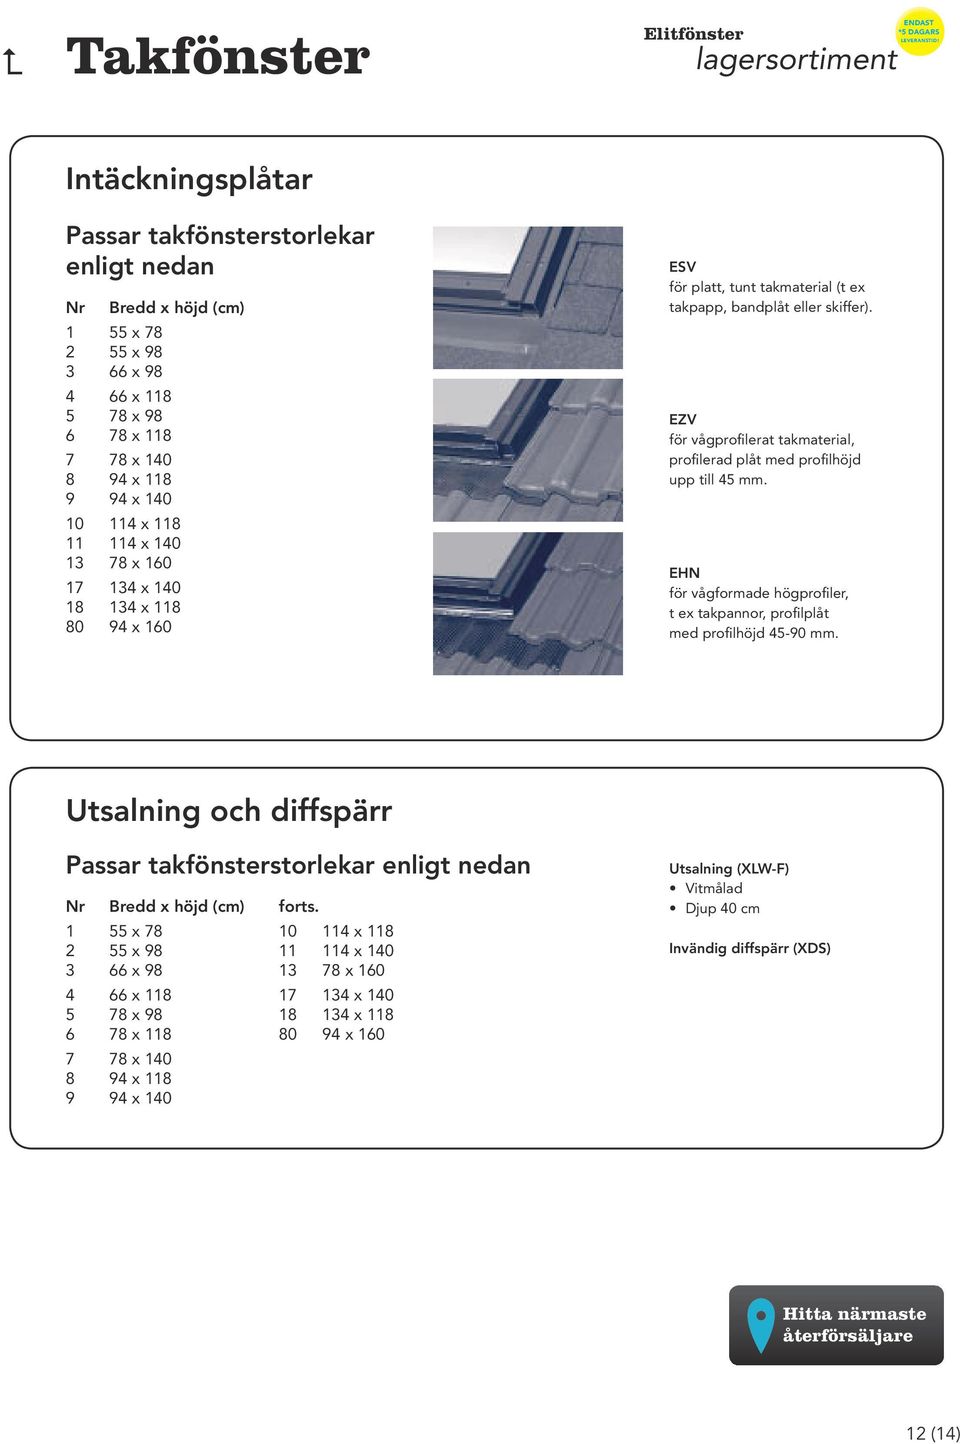 EZV för vågprofilerat takmaterial, profilerad plåt med profilhöjd upp till 45 mm. EHN för vågformade högprofiler, t ex takpannor, profilplåt med profilhöjd 45-90 mm.